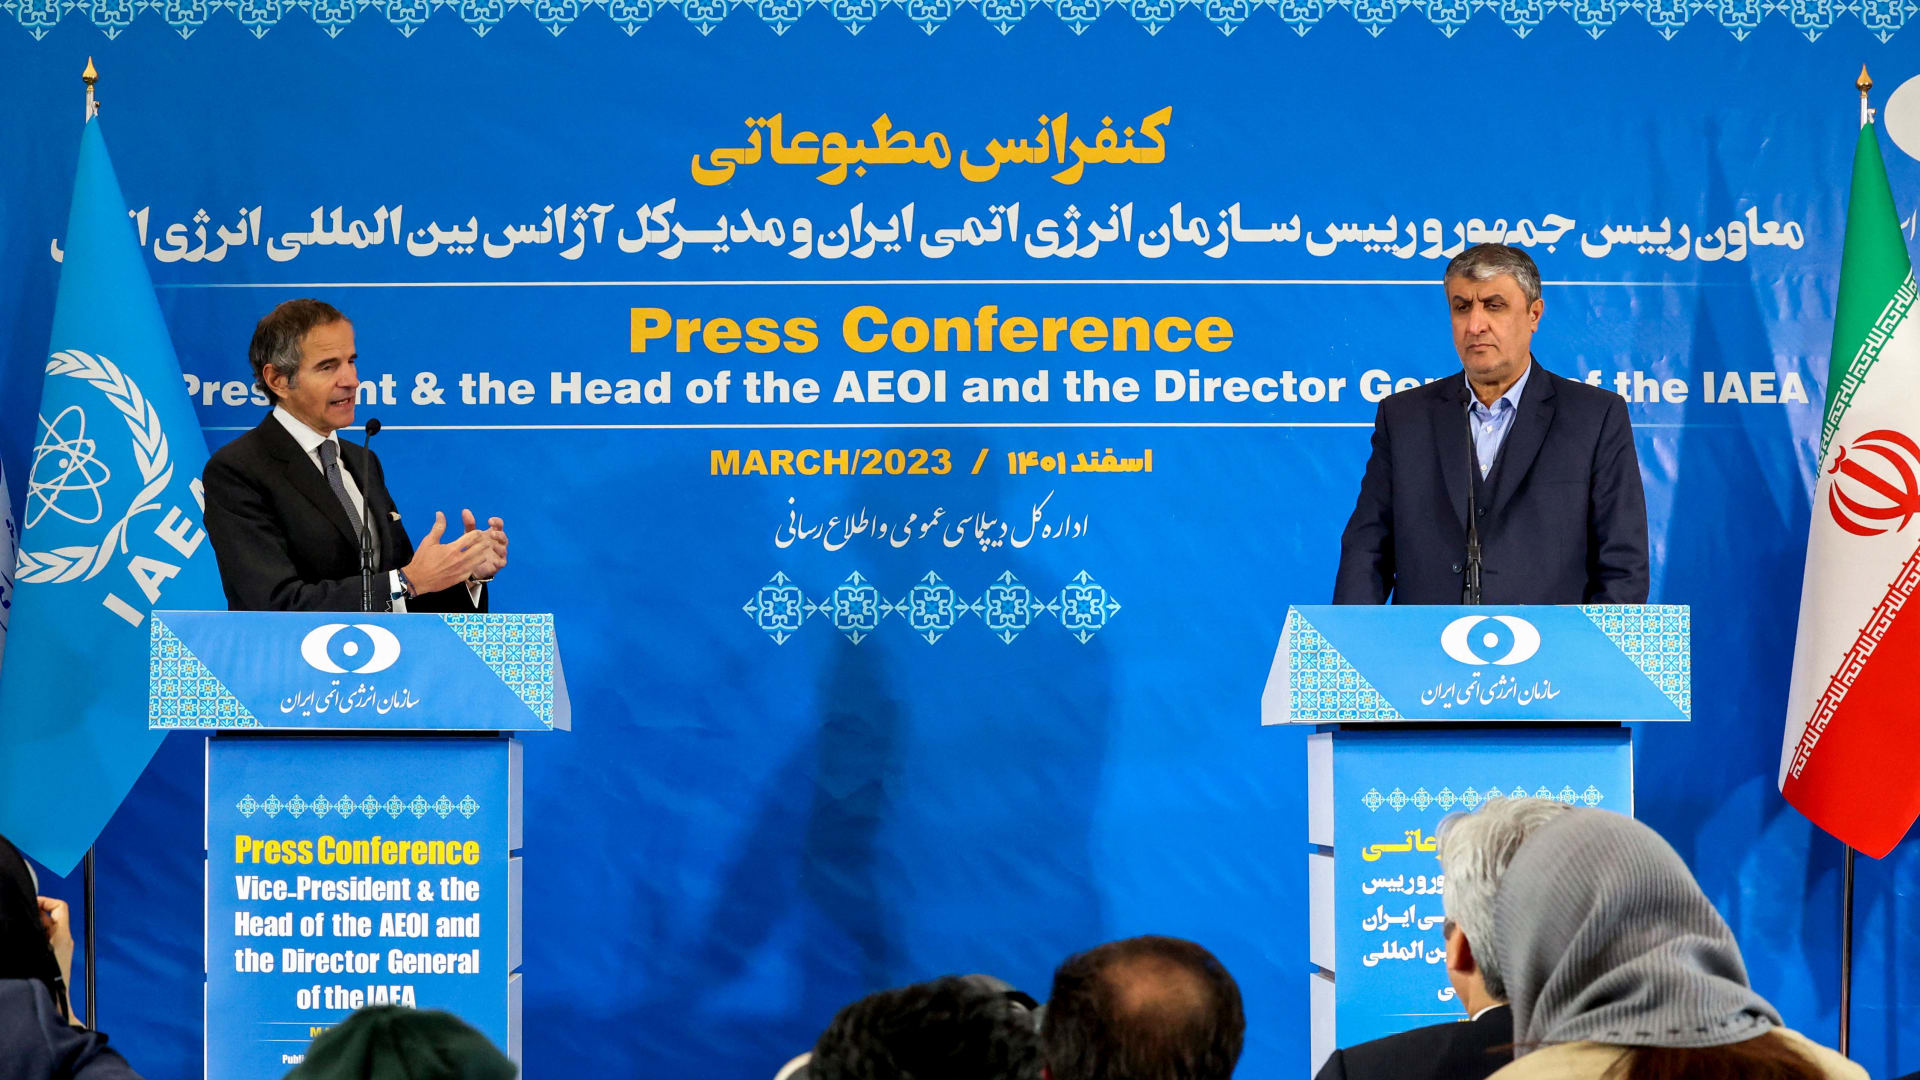 مدير وكالة الطاقة الذرية يتحدث من طهران عن تهديدات إسرائيل ضد المنشآت الإيرانية النووية